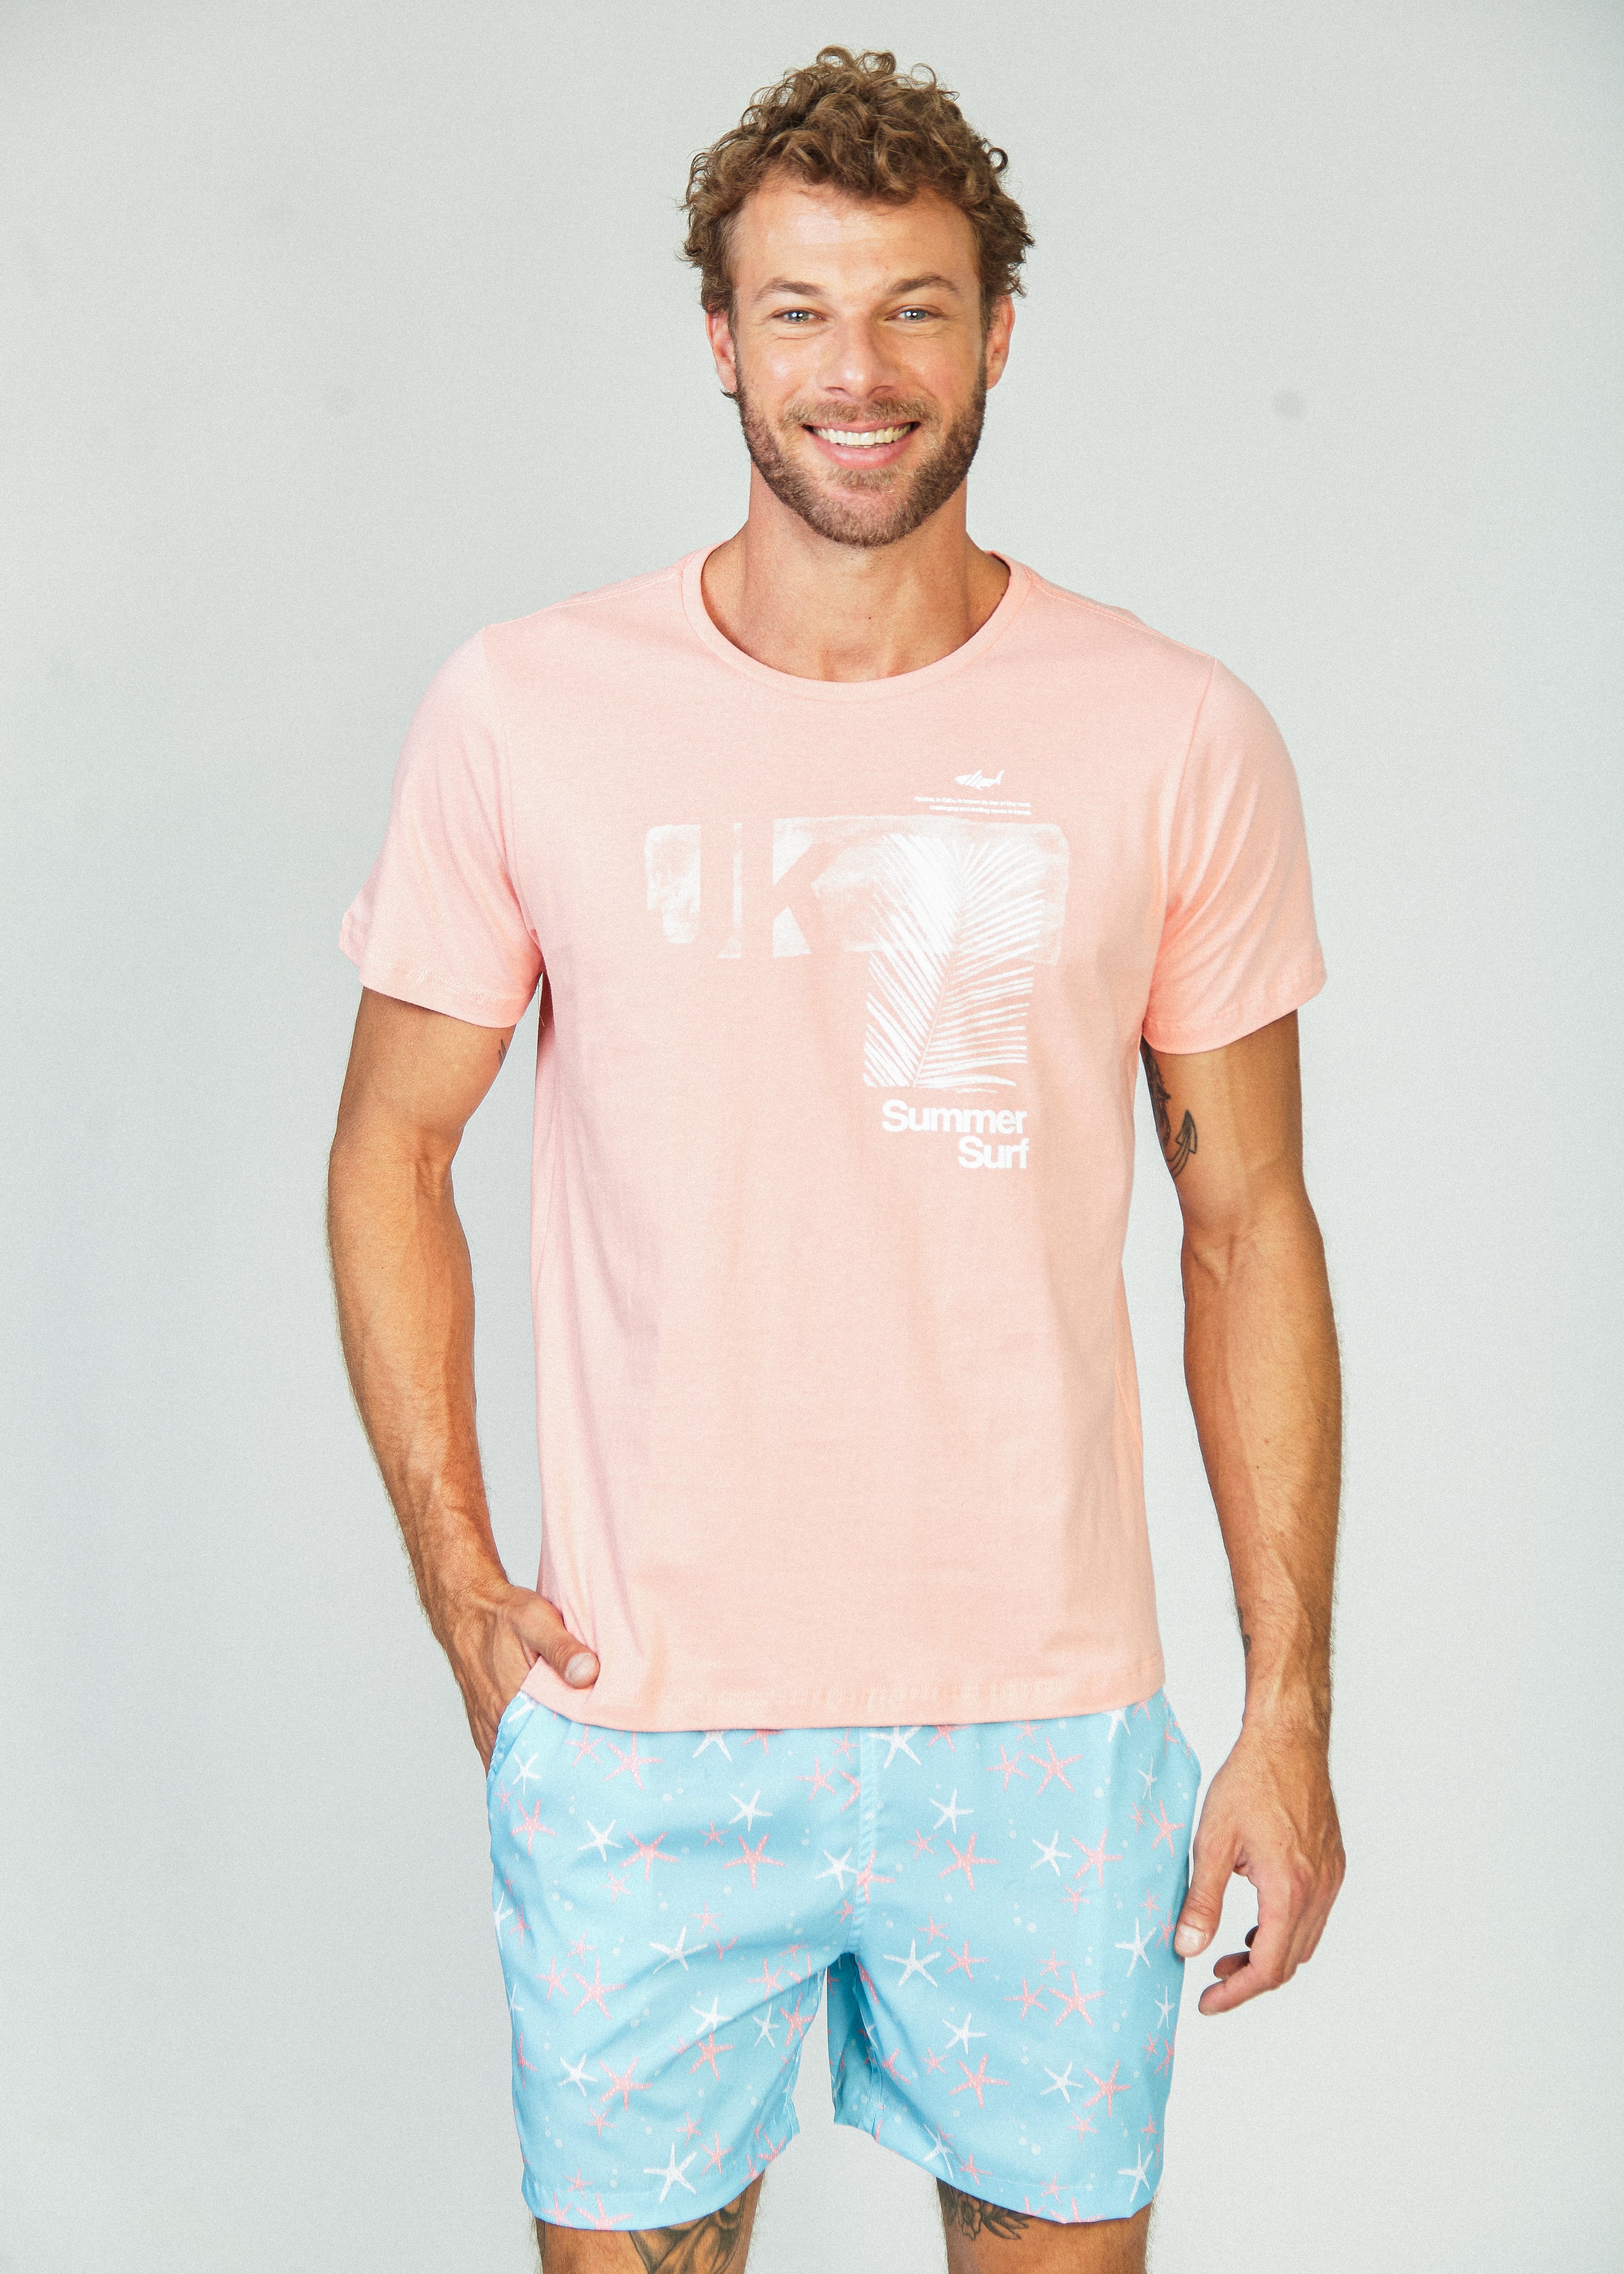 Camiseta Estampada Summer Surf - Salmão